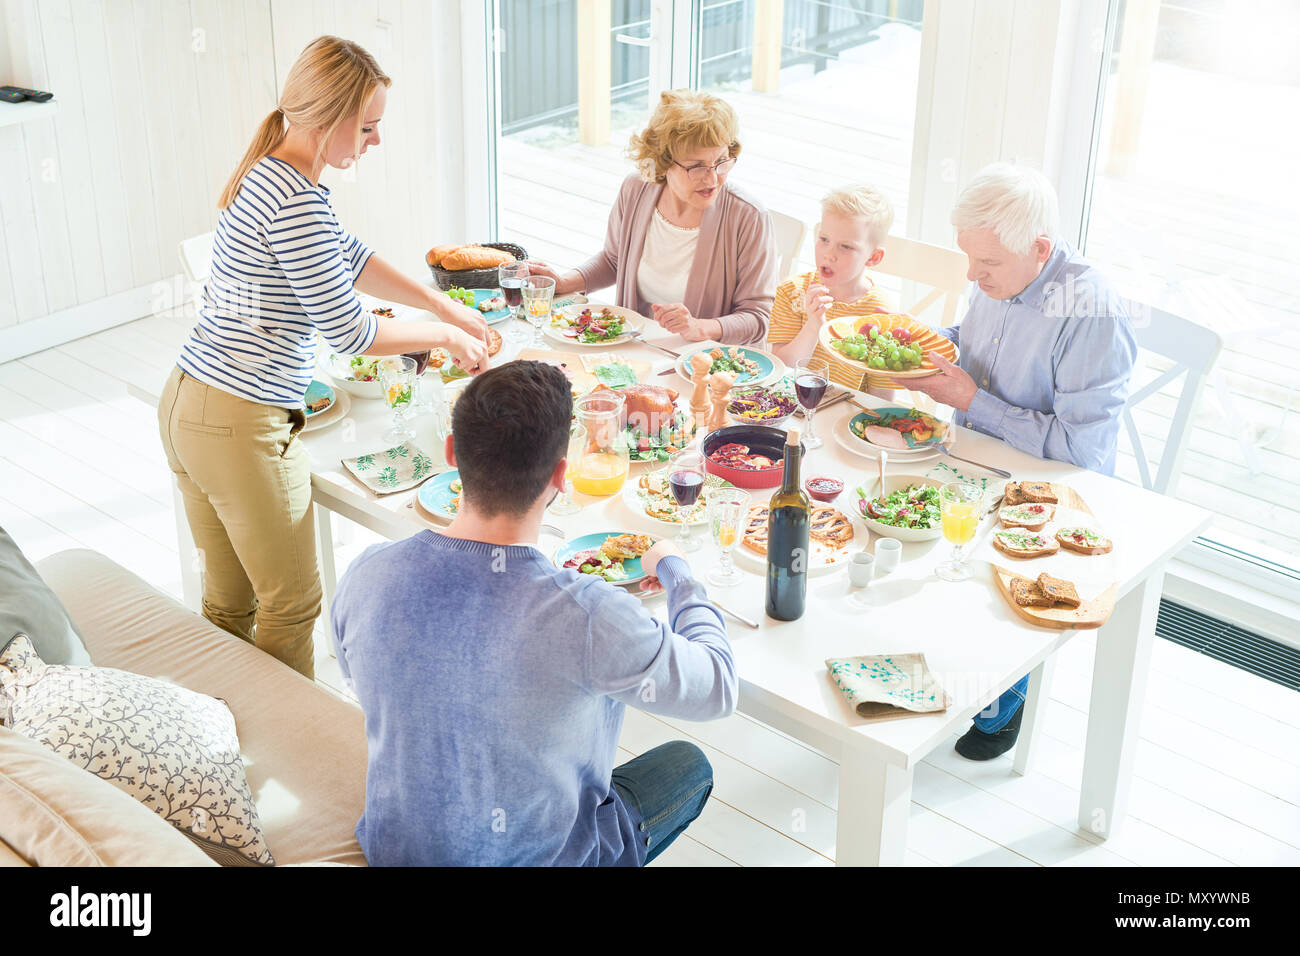 Retrato de dos generaciones de la familia feliz de disfrutar de una cena juntos sentados en la mesa festiva con deliciosos platos durante la celebración navideña en sunli Foto de stock